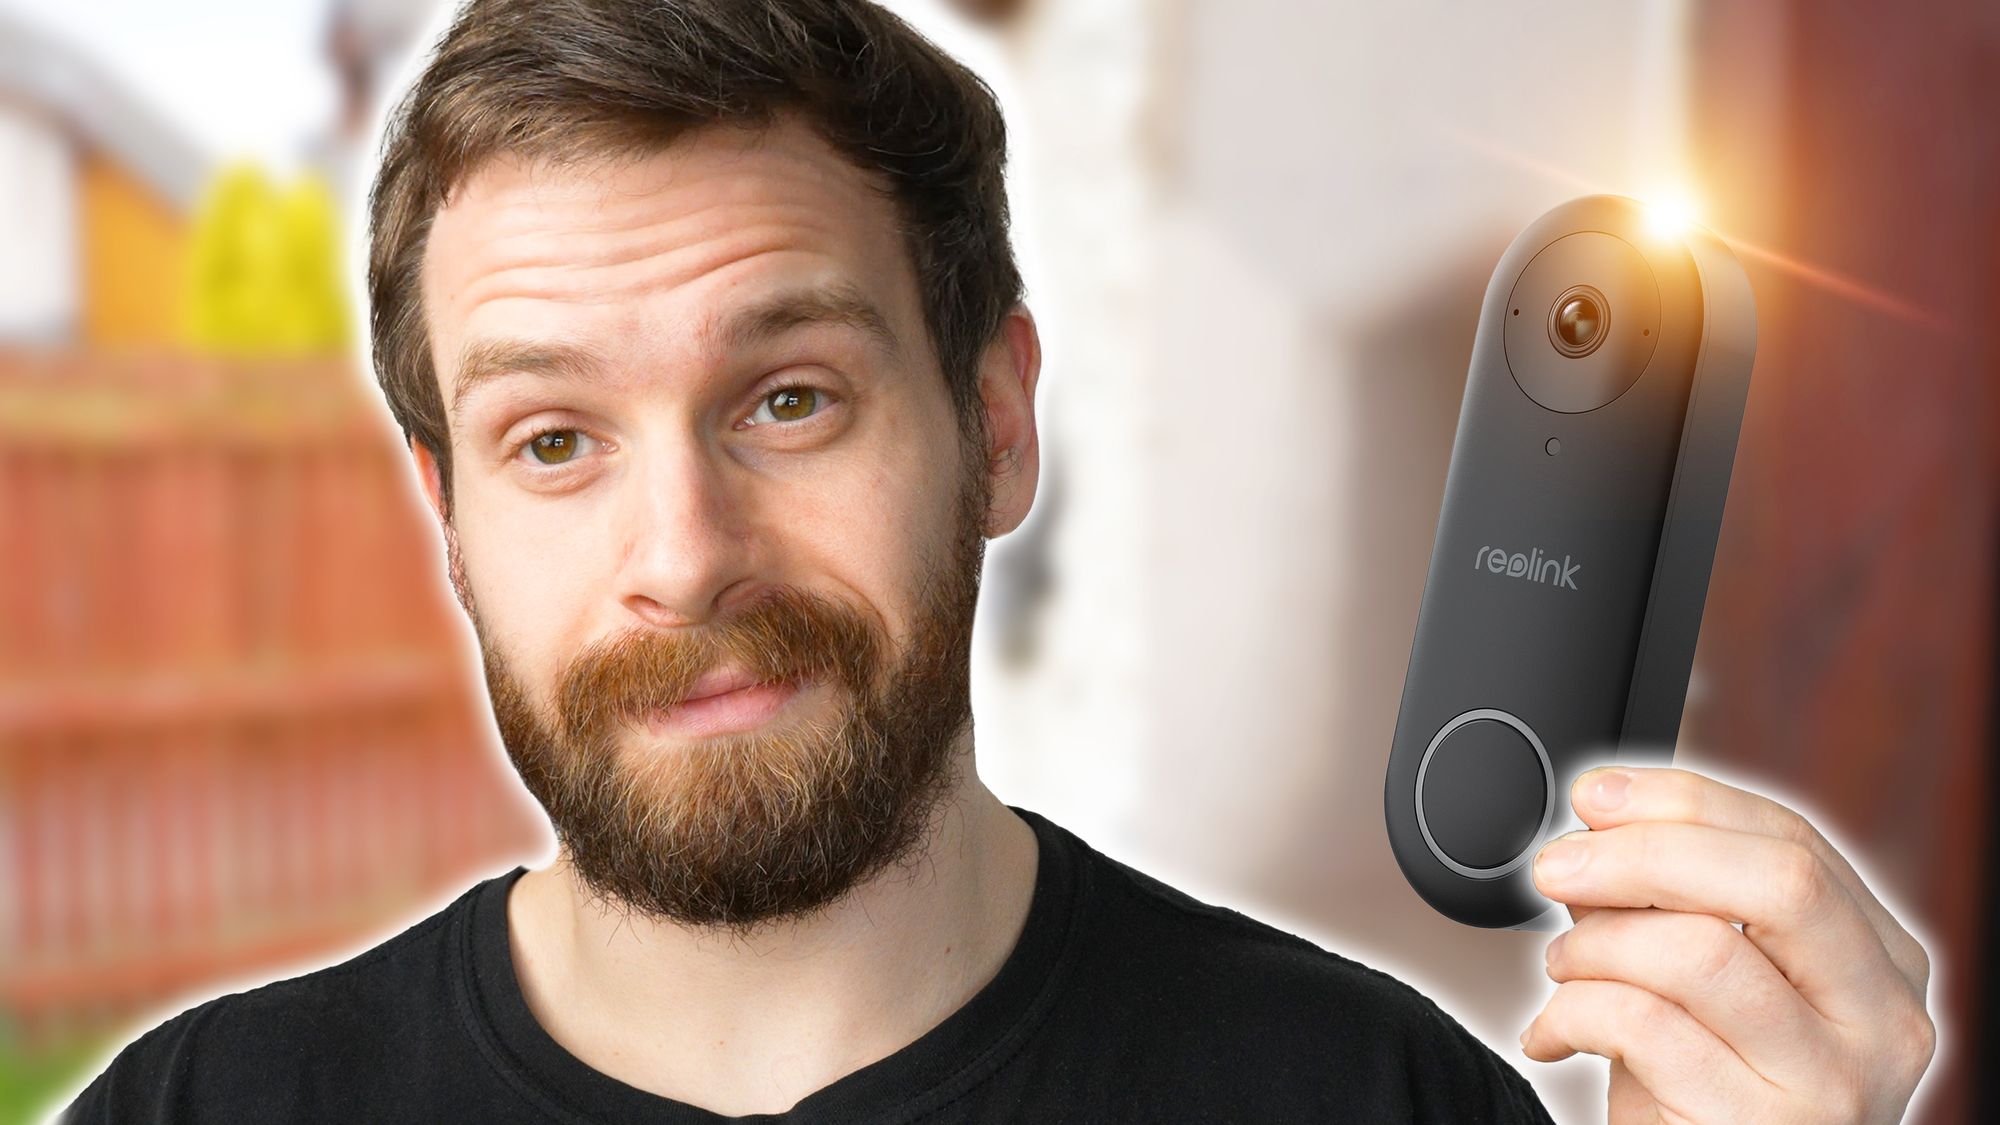 The King Of Video Doorbells - Reolink Video Doorbell Review